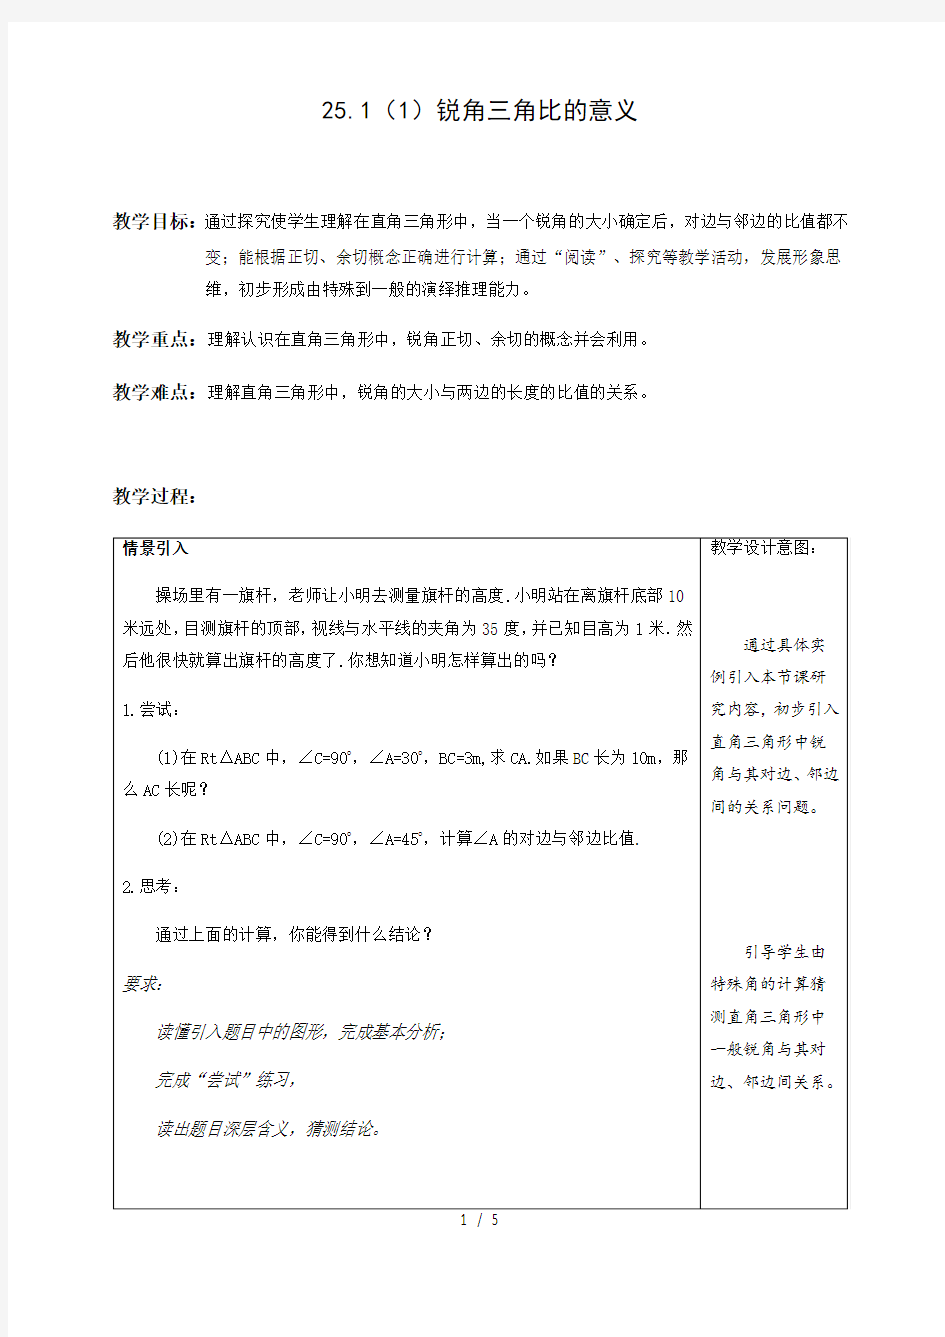 沪教版(上海)初中数学九年级第一学期 25.1(1)锐角三角比的意义 教案  